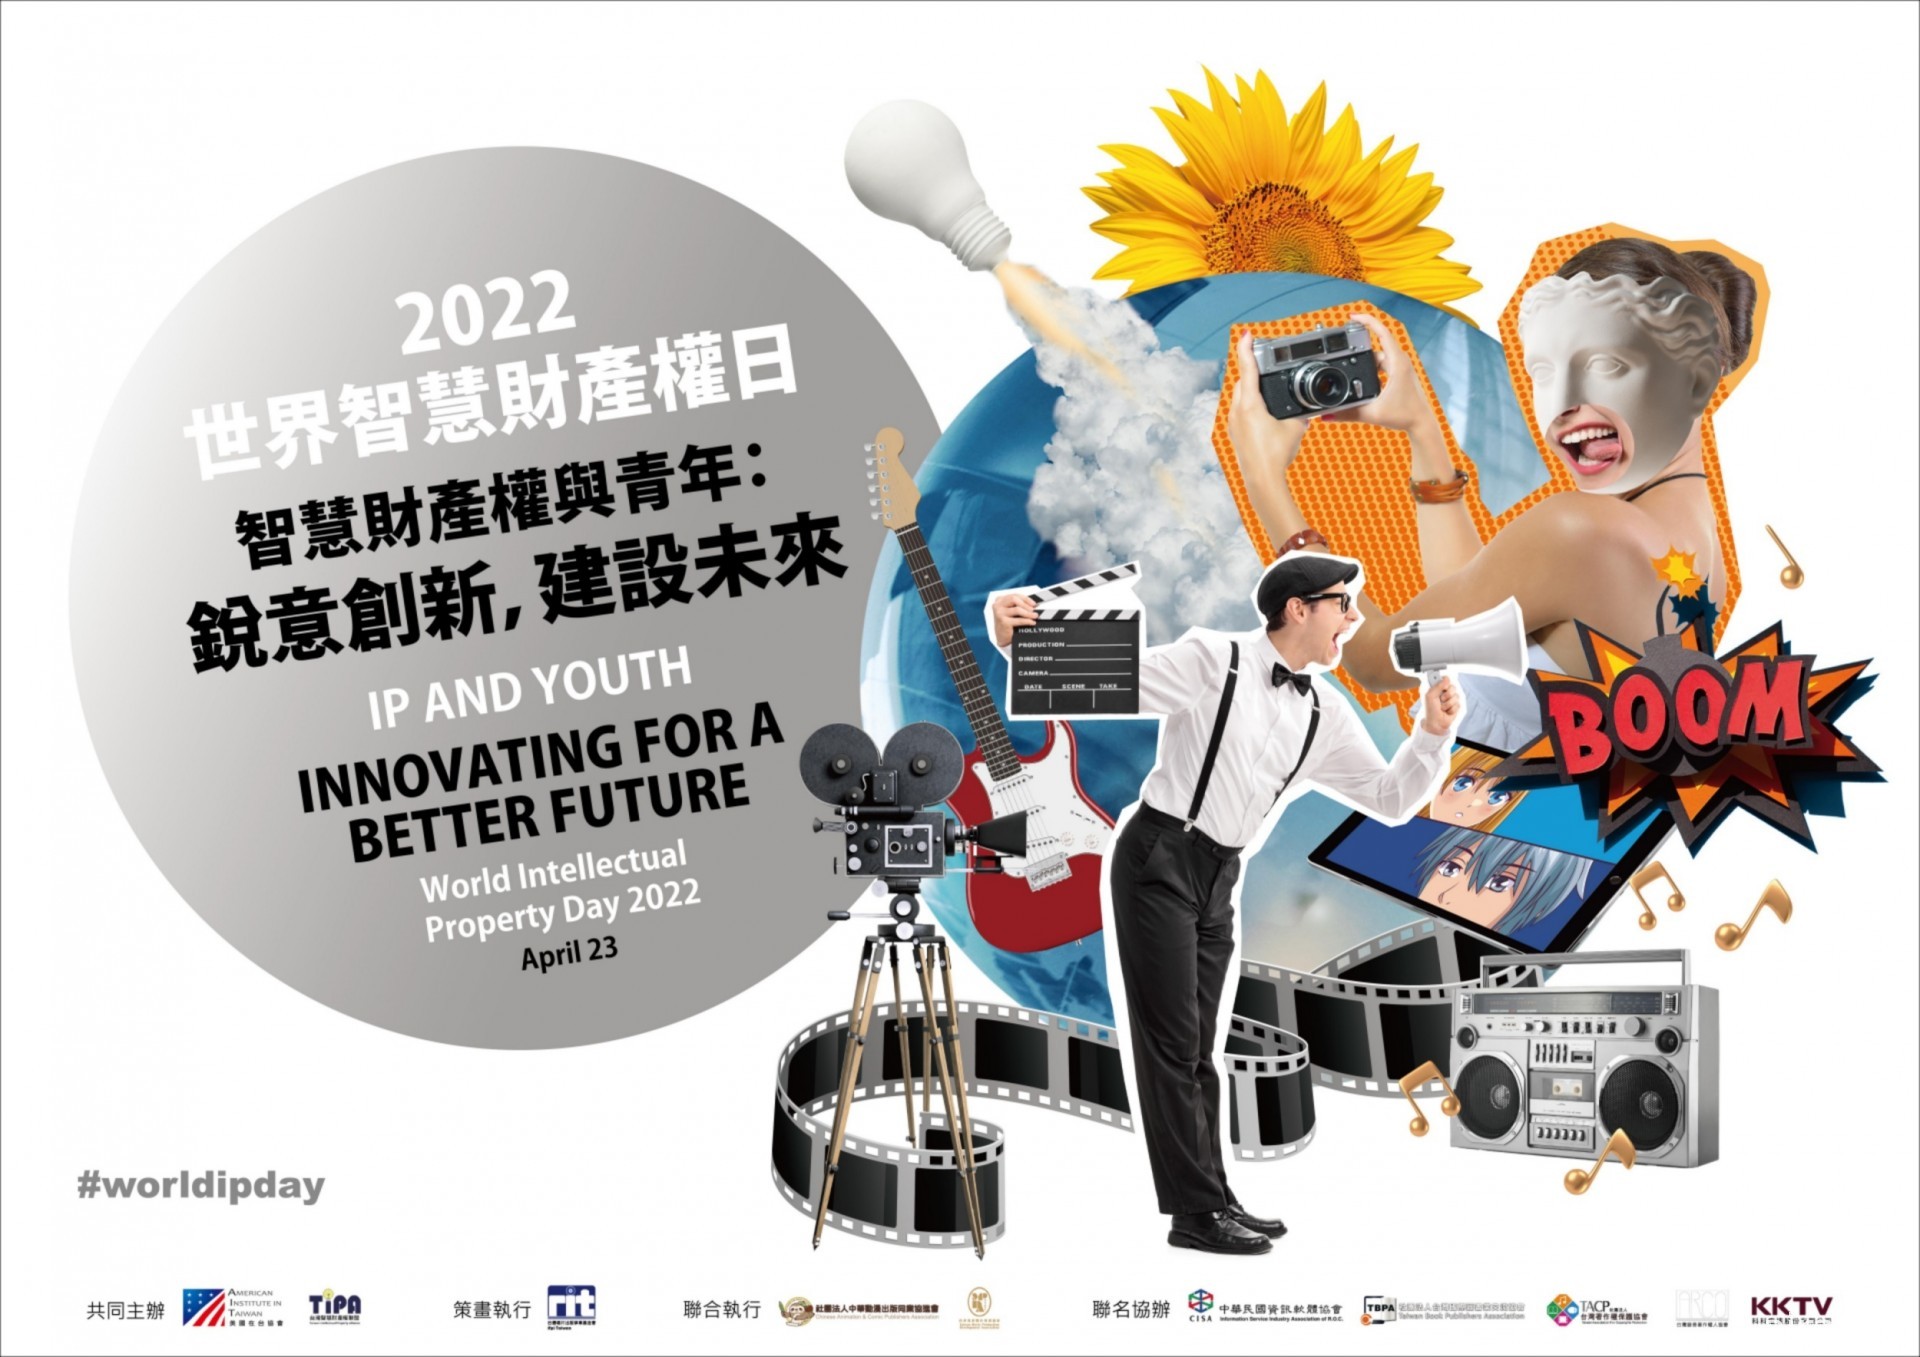 「2022 World IP Day 慶祝活動」將邀霹靂總經理、電影導演李世偉等人舉辦演講分享經歷